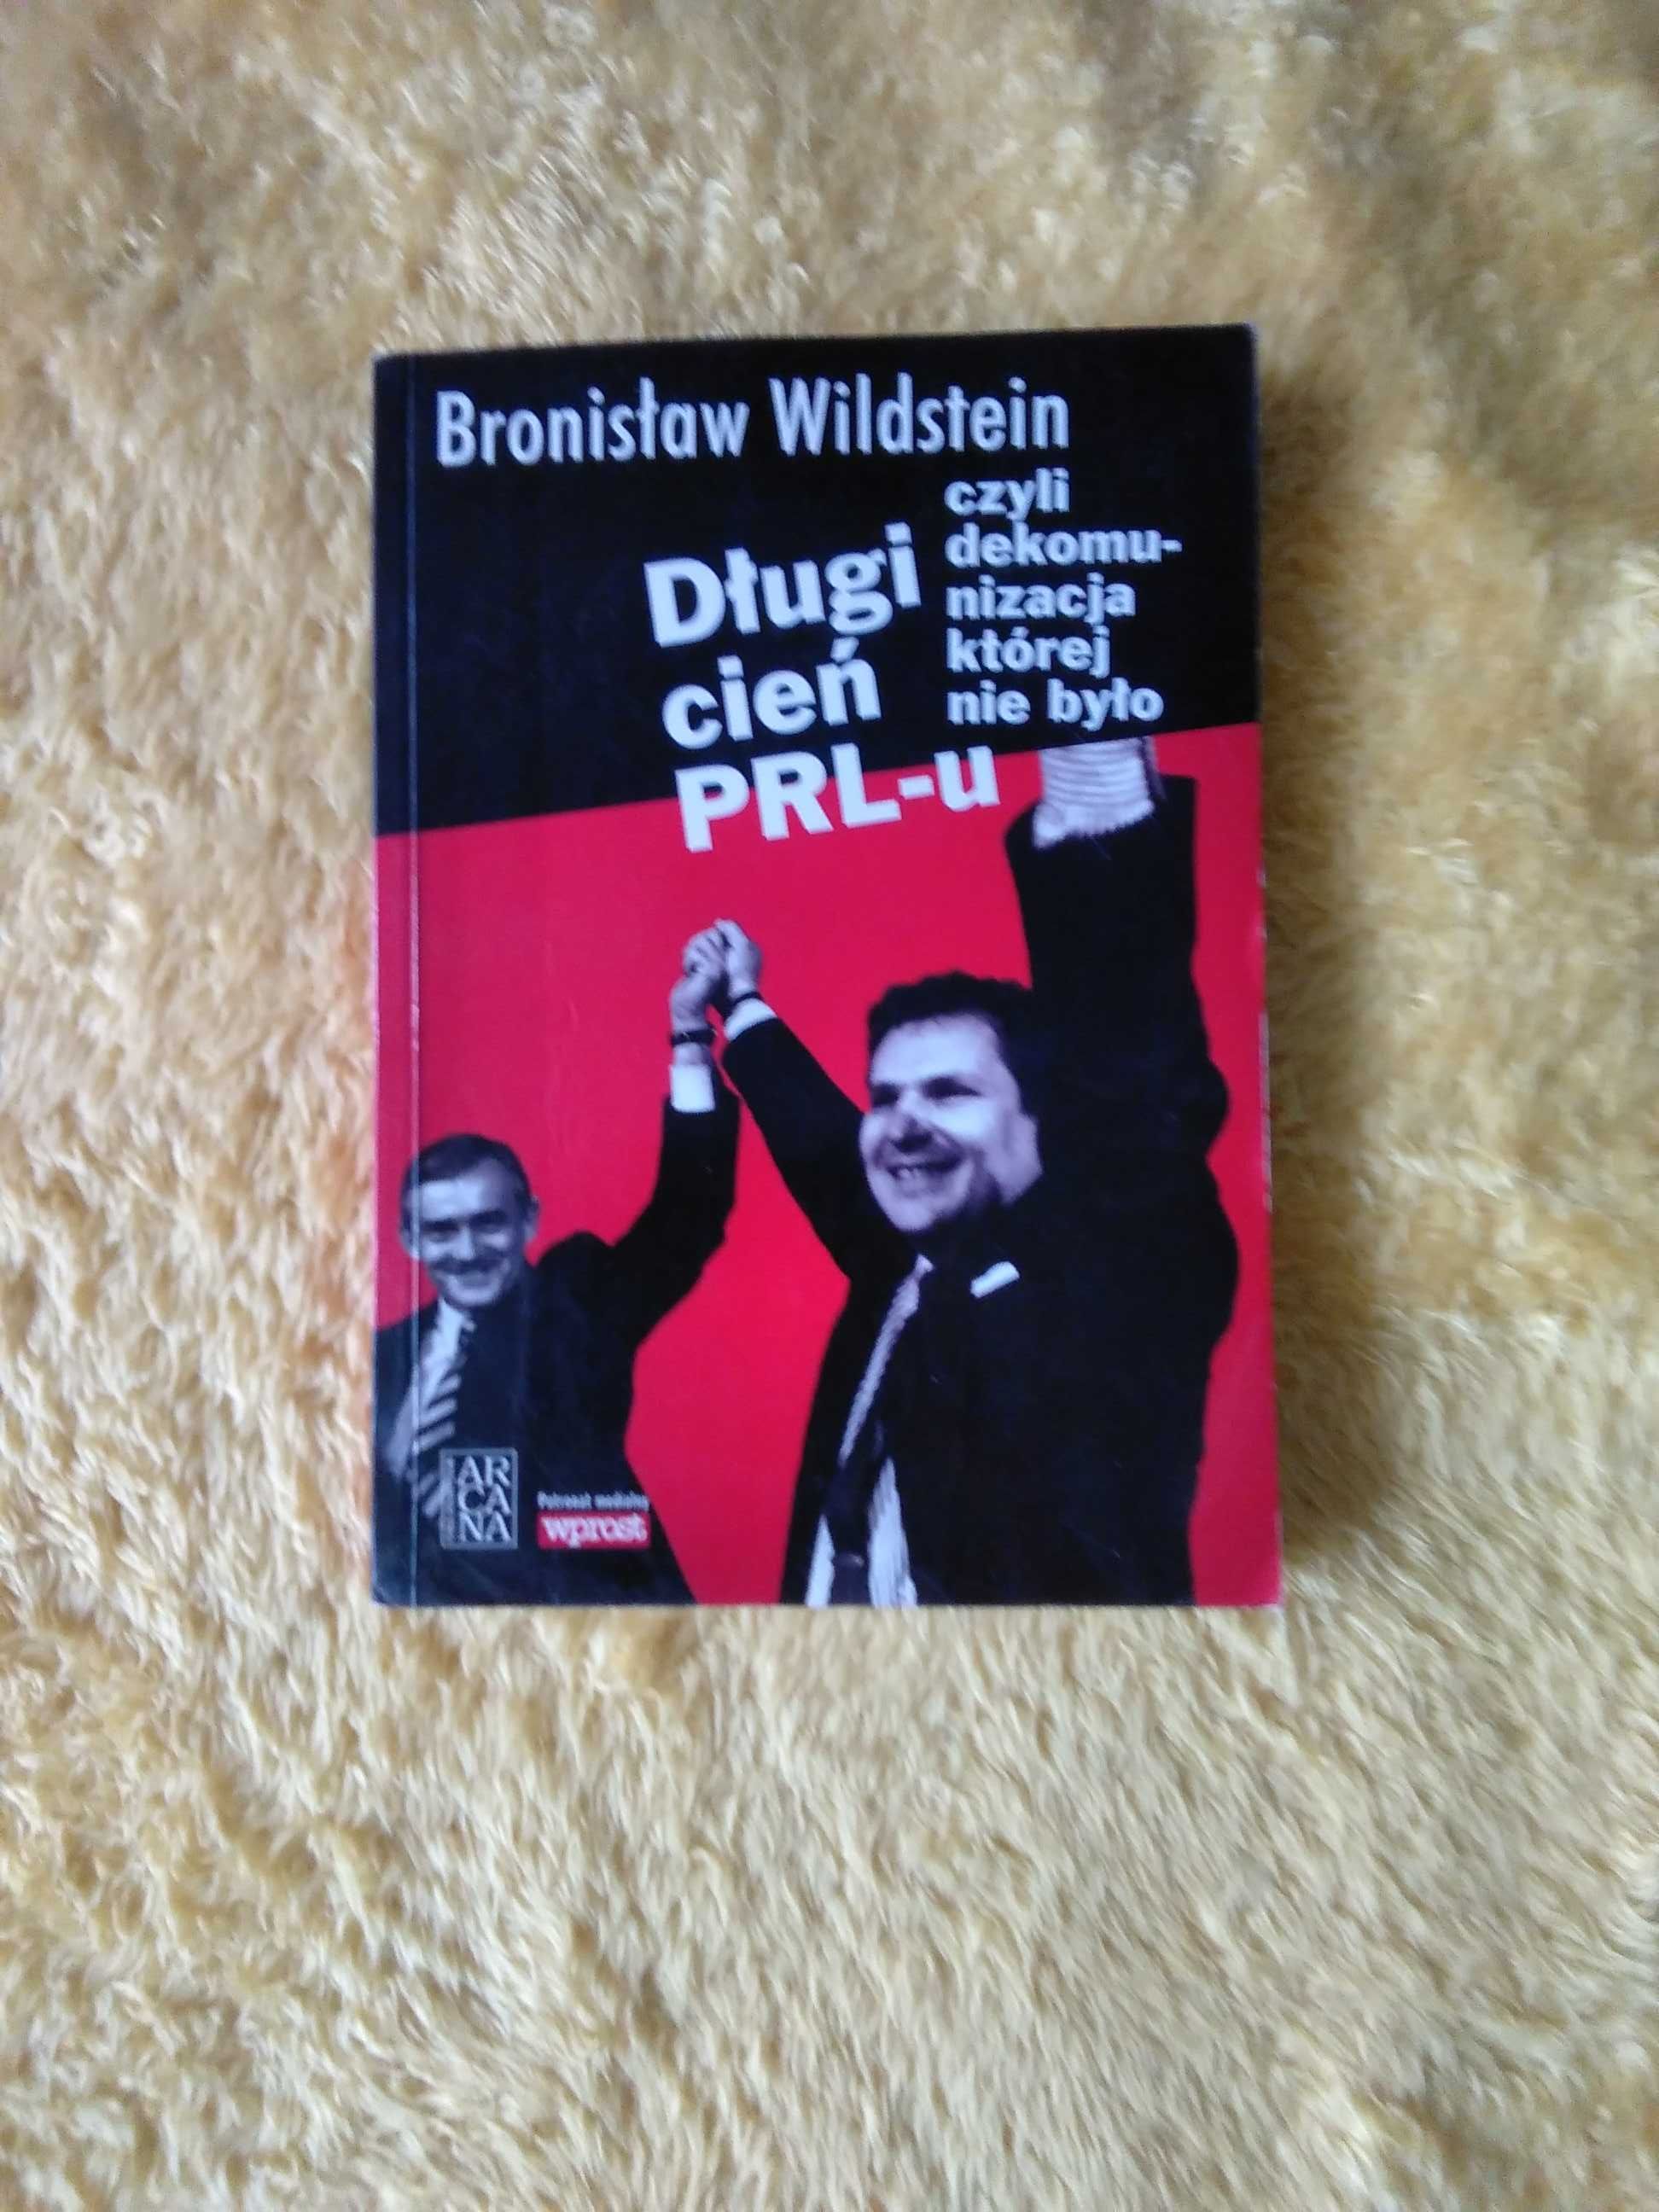 Książka "Długi cień PRL-u". Bronisław Wildstein!